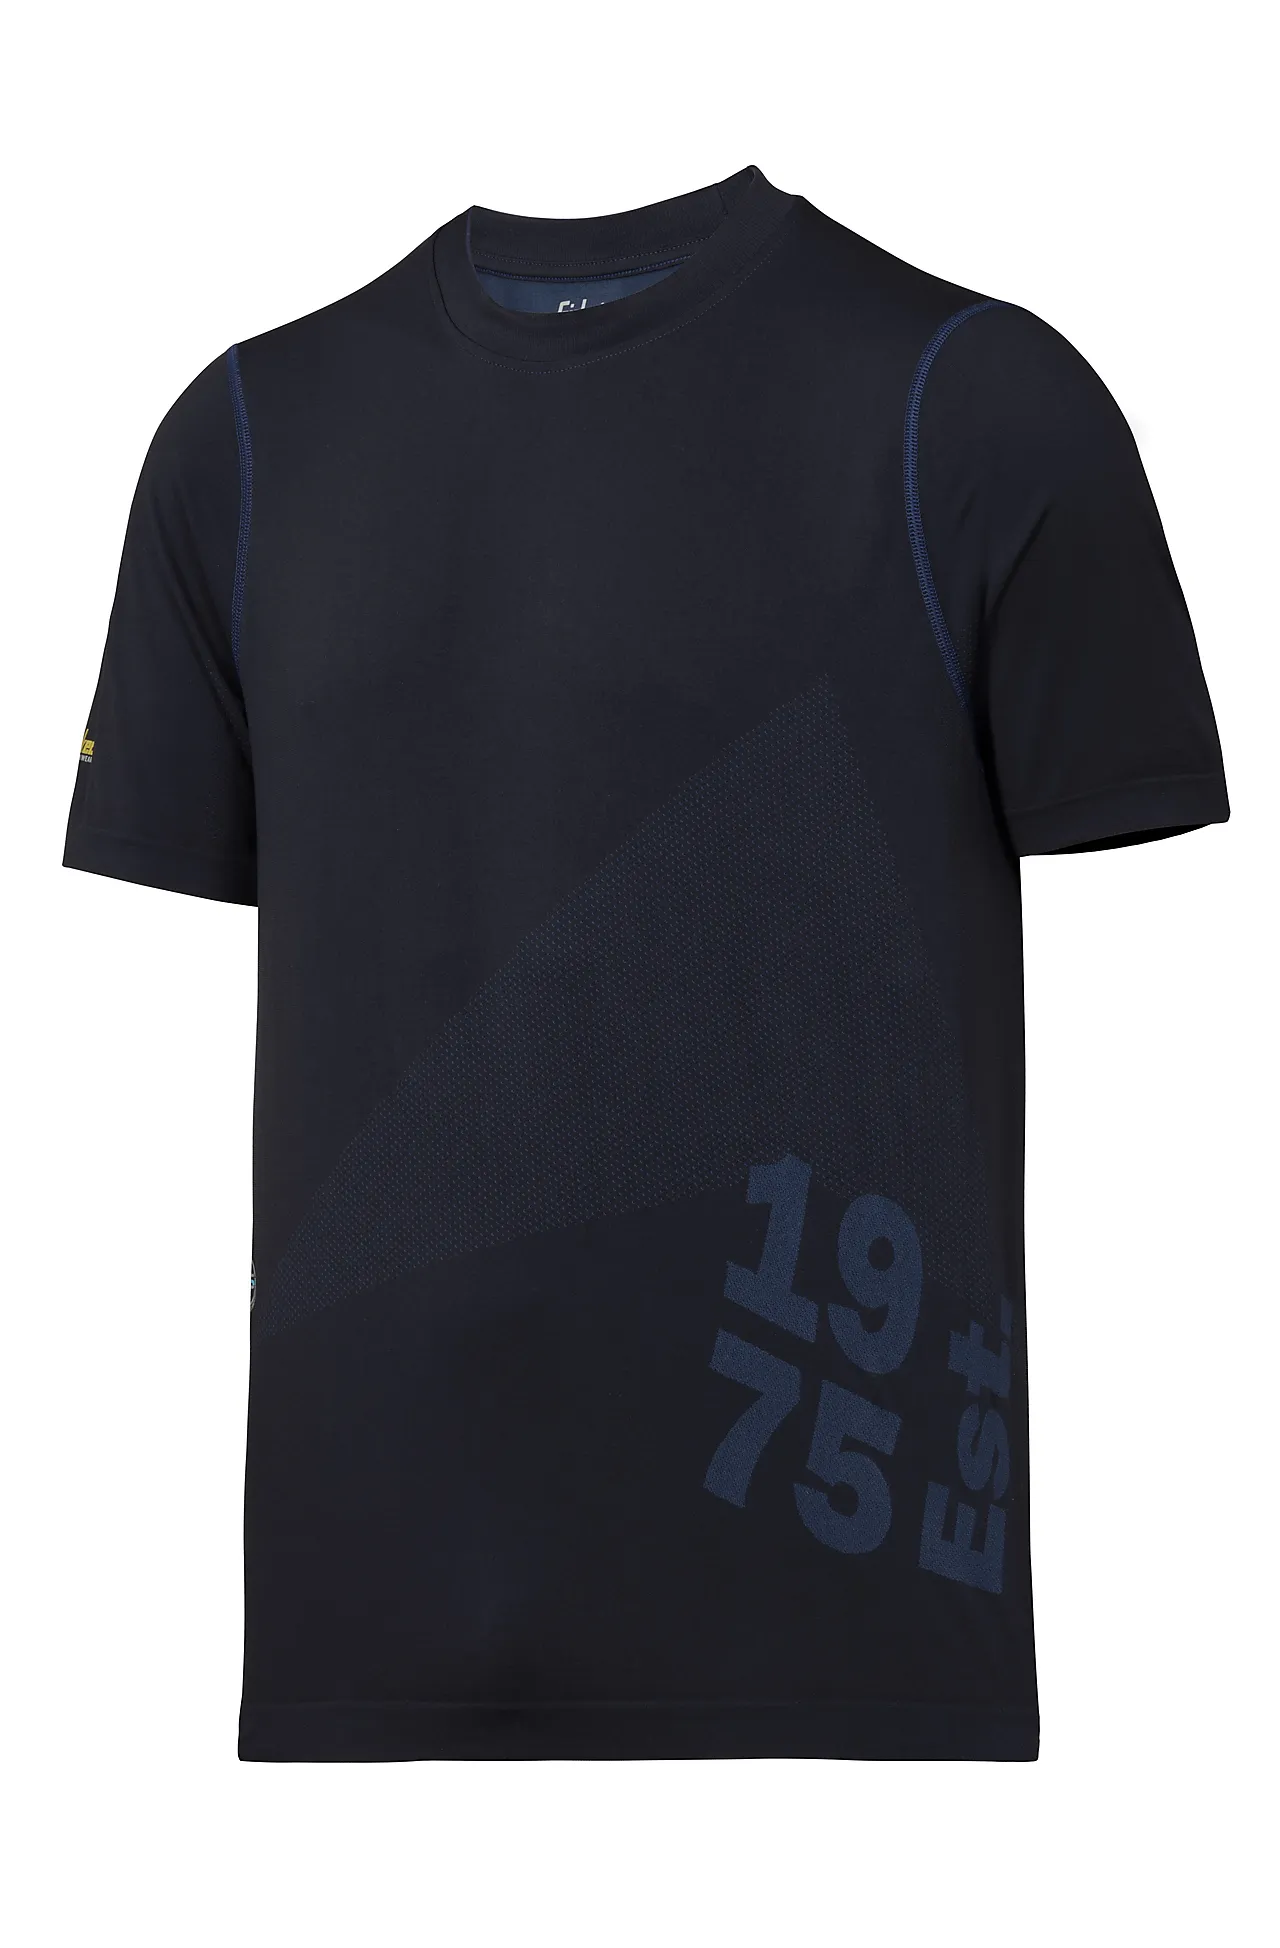 T-skjorte 2519 mørkeblå str XS Snickers 37,5 tech flexiwork null - null - 1